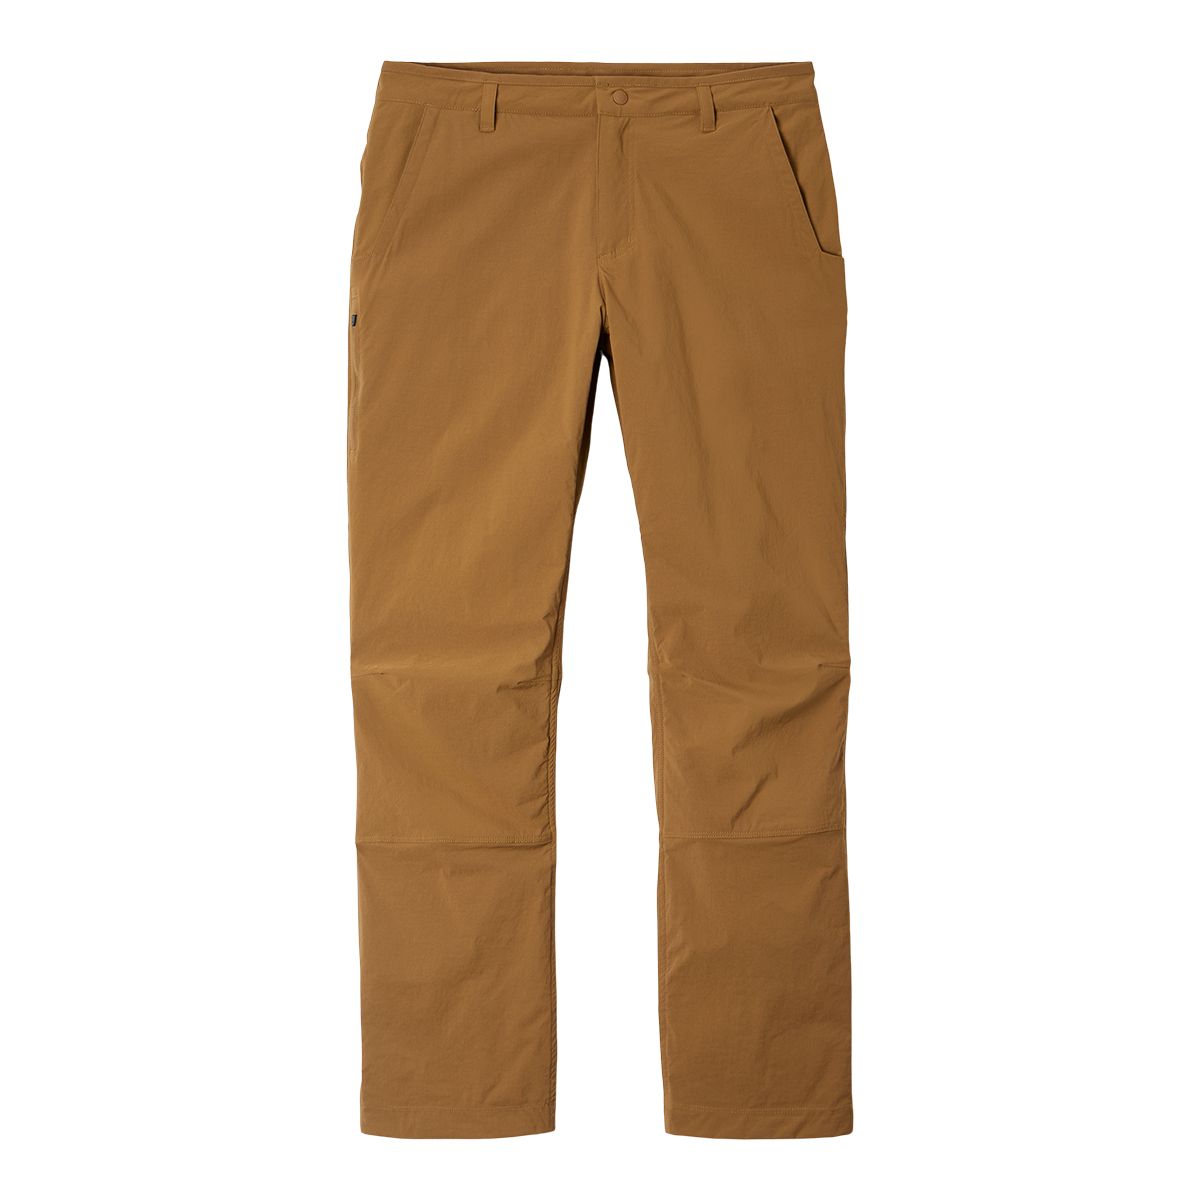 Mountain Hardwear Men's Basin Lined Pants